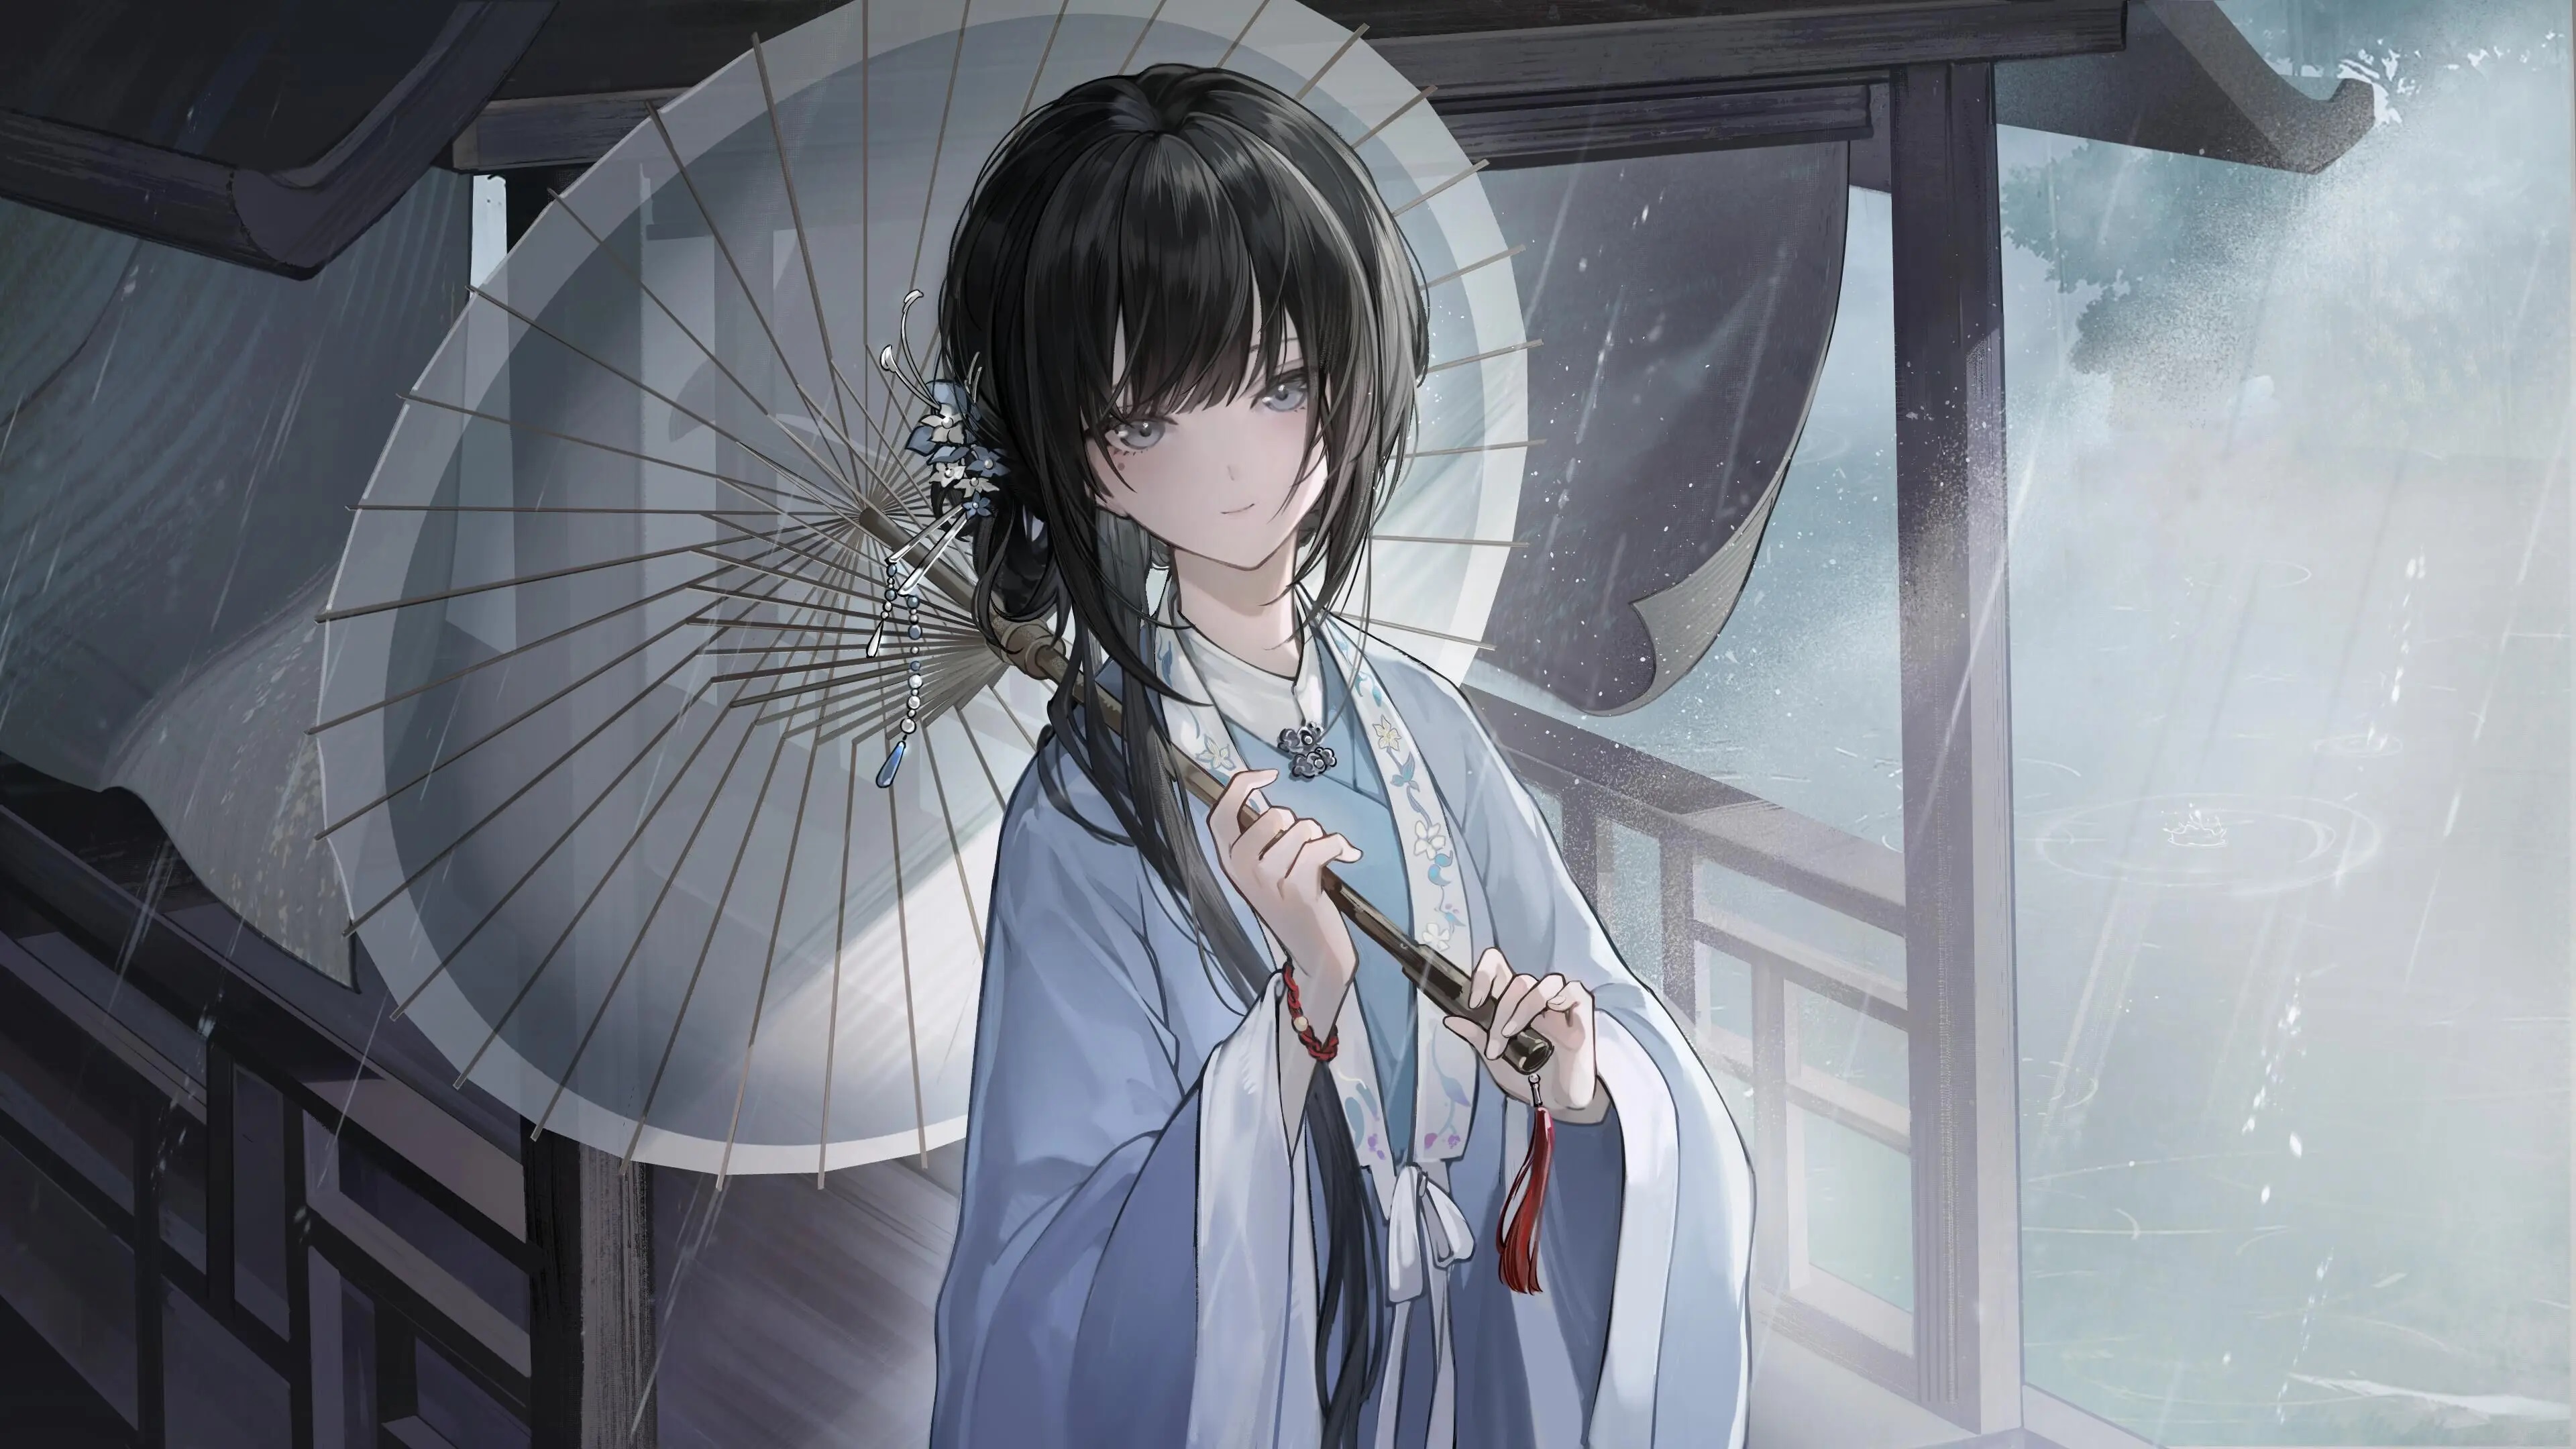 Anime 3840x2160 illustration galgame paper umbrellas hanfu black hair looking at viewer